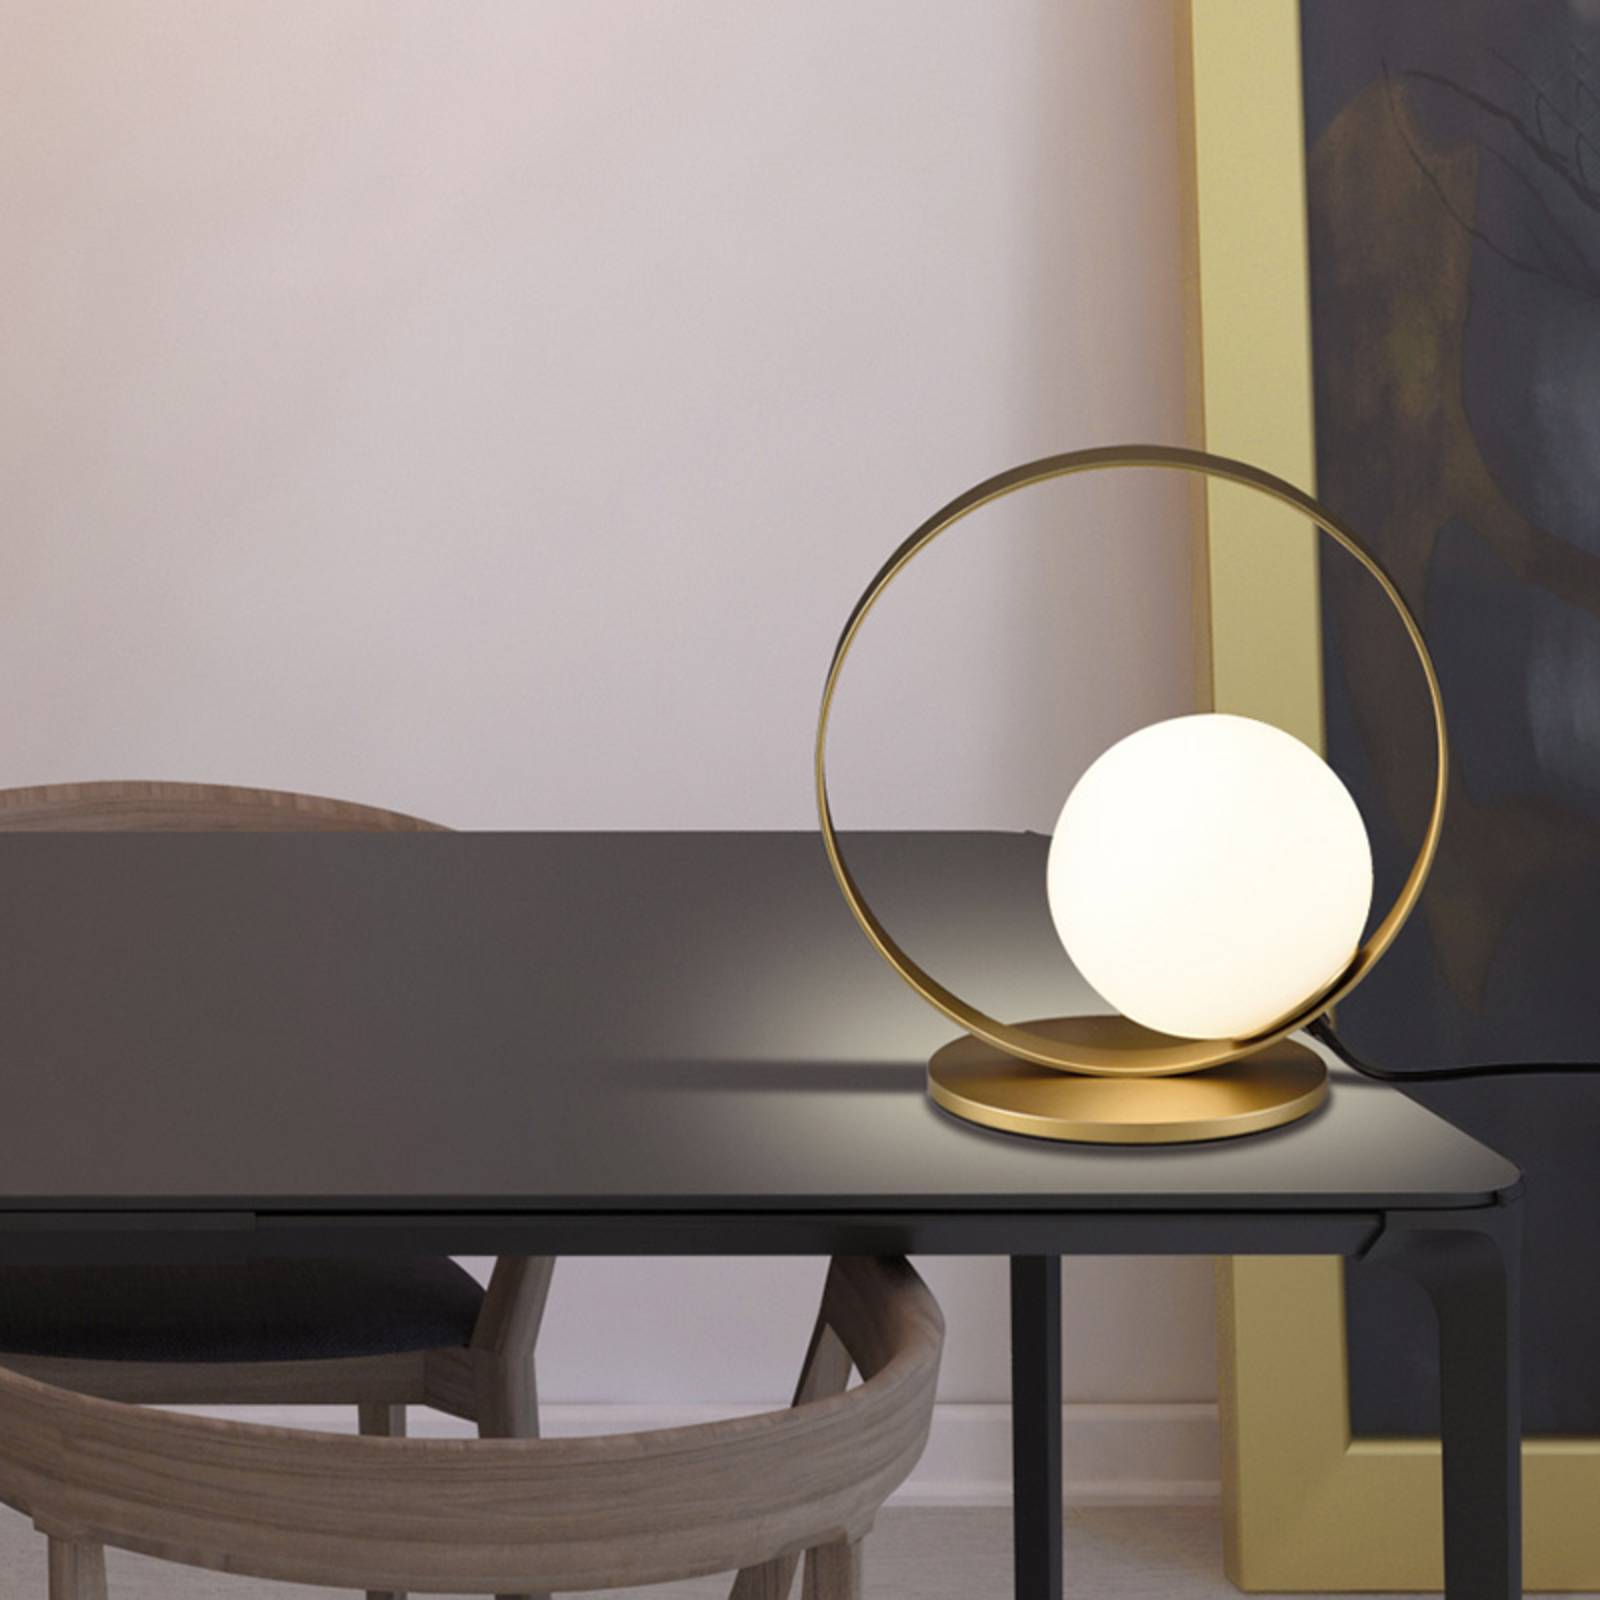 Acb iluminación led asztali lámpa halo, arany / opál